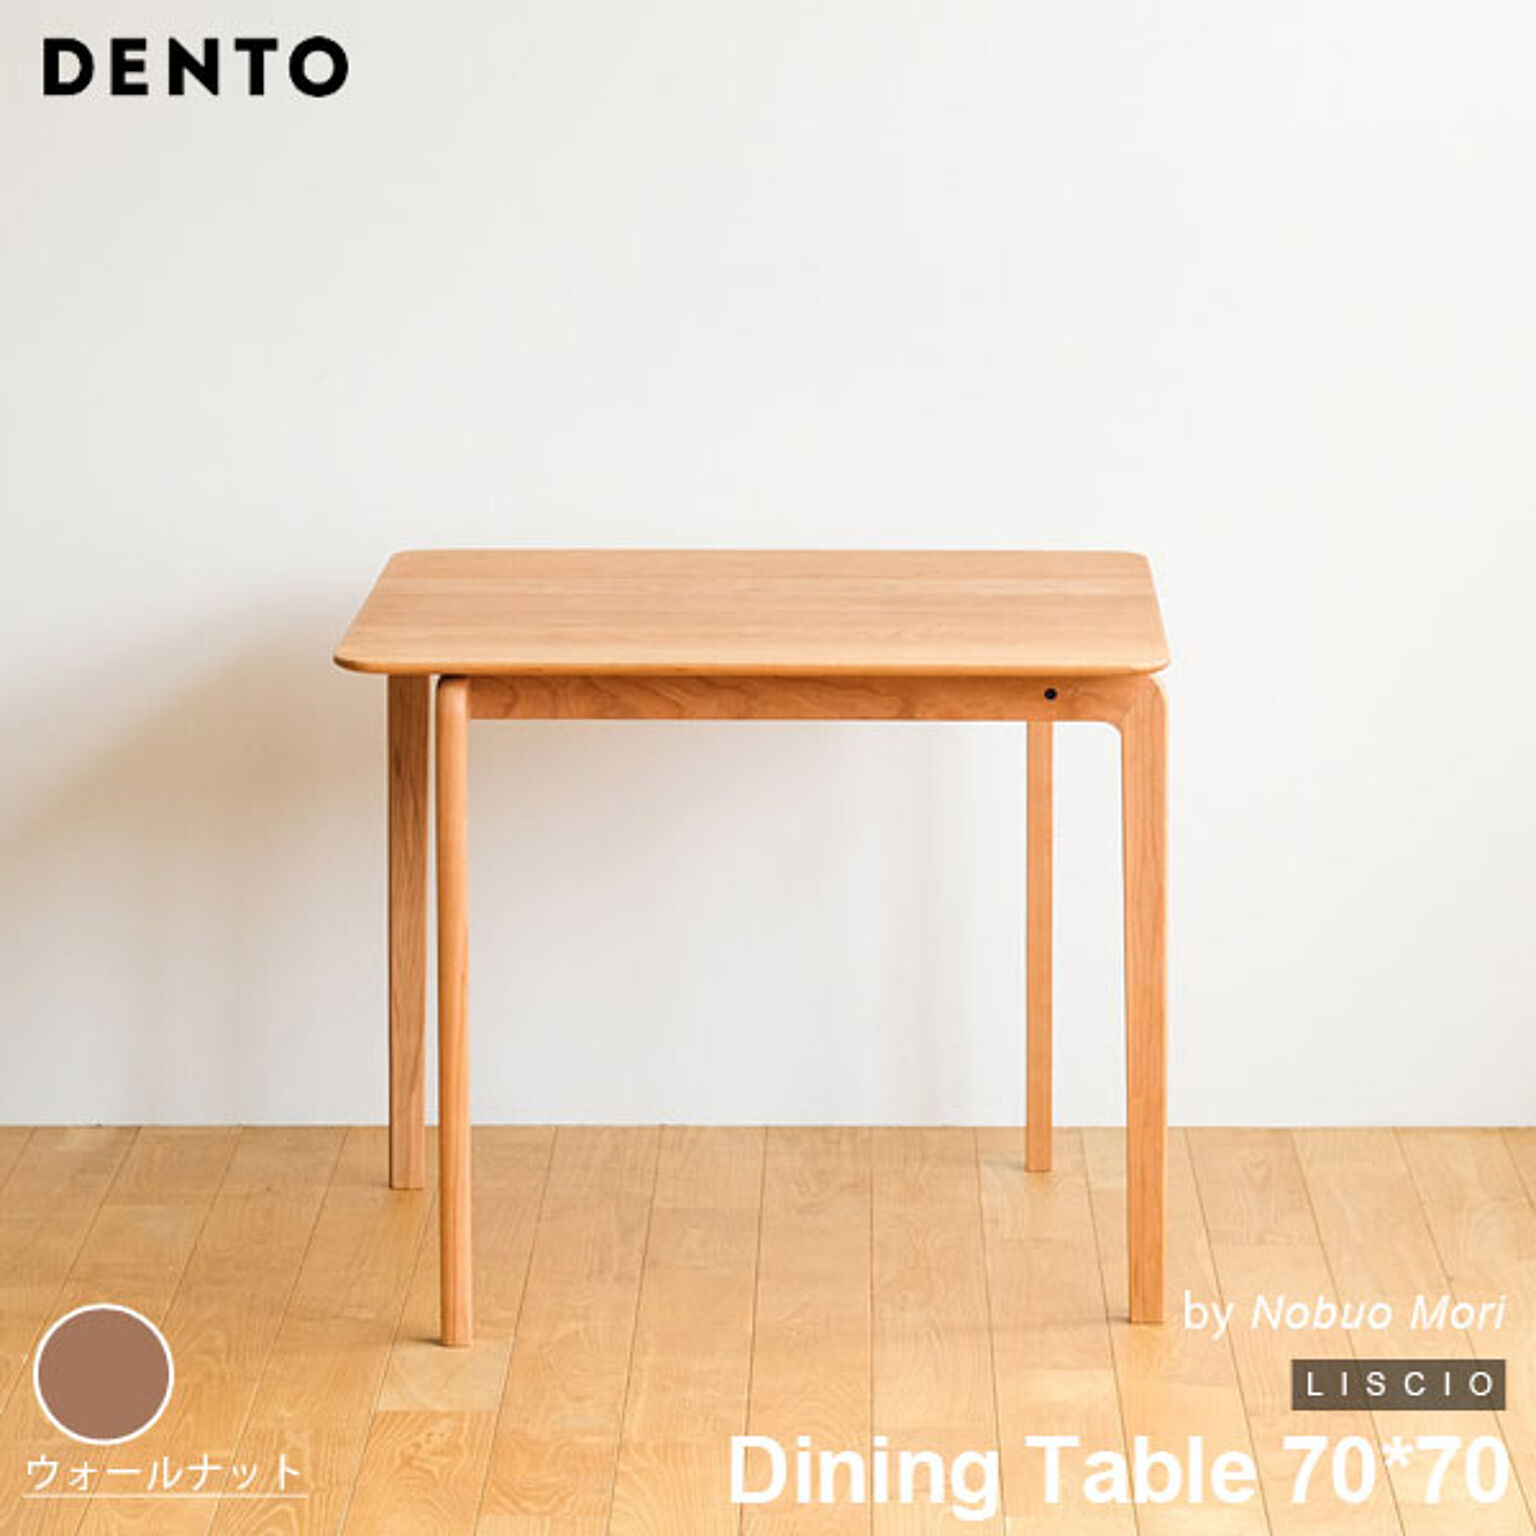 ダイニングテーブル 木製 四角 正方形 2人用 LISCIO Dining Table 84*84 84cm リッショ 木製 無垢 スタイリッシュ 北欧 ダイニング 日本製 